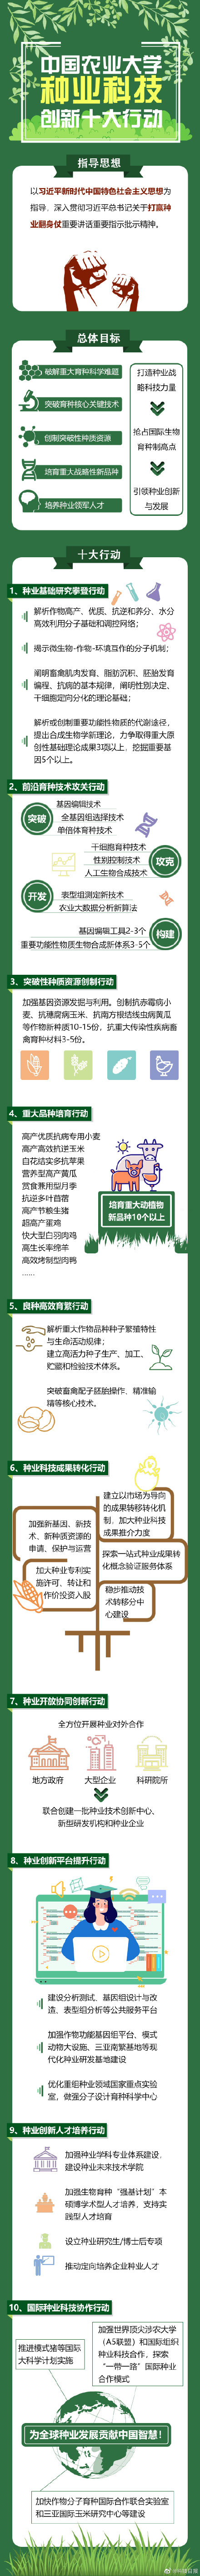 中国农大种业科技创新十大专项行动发布